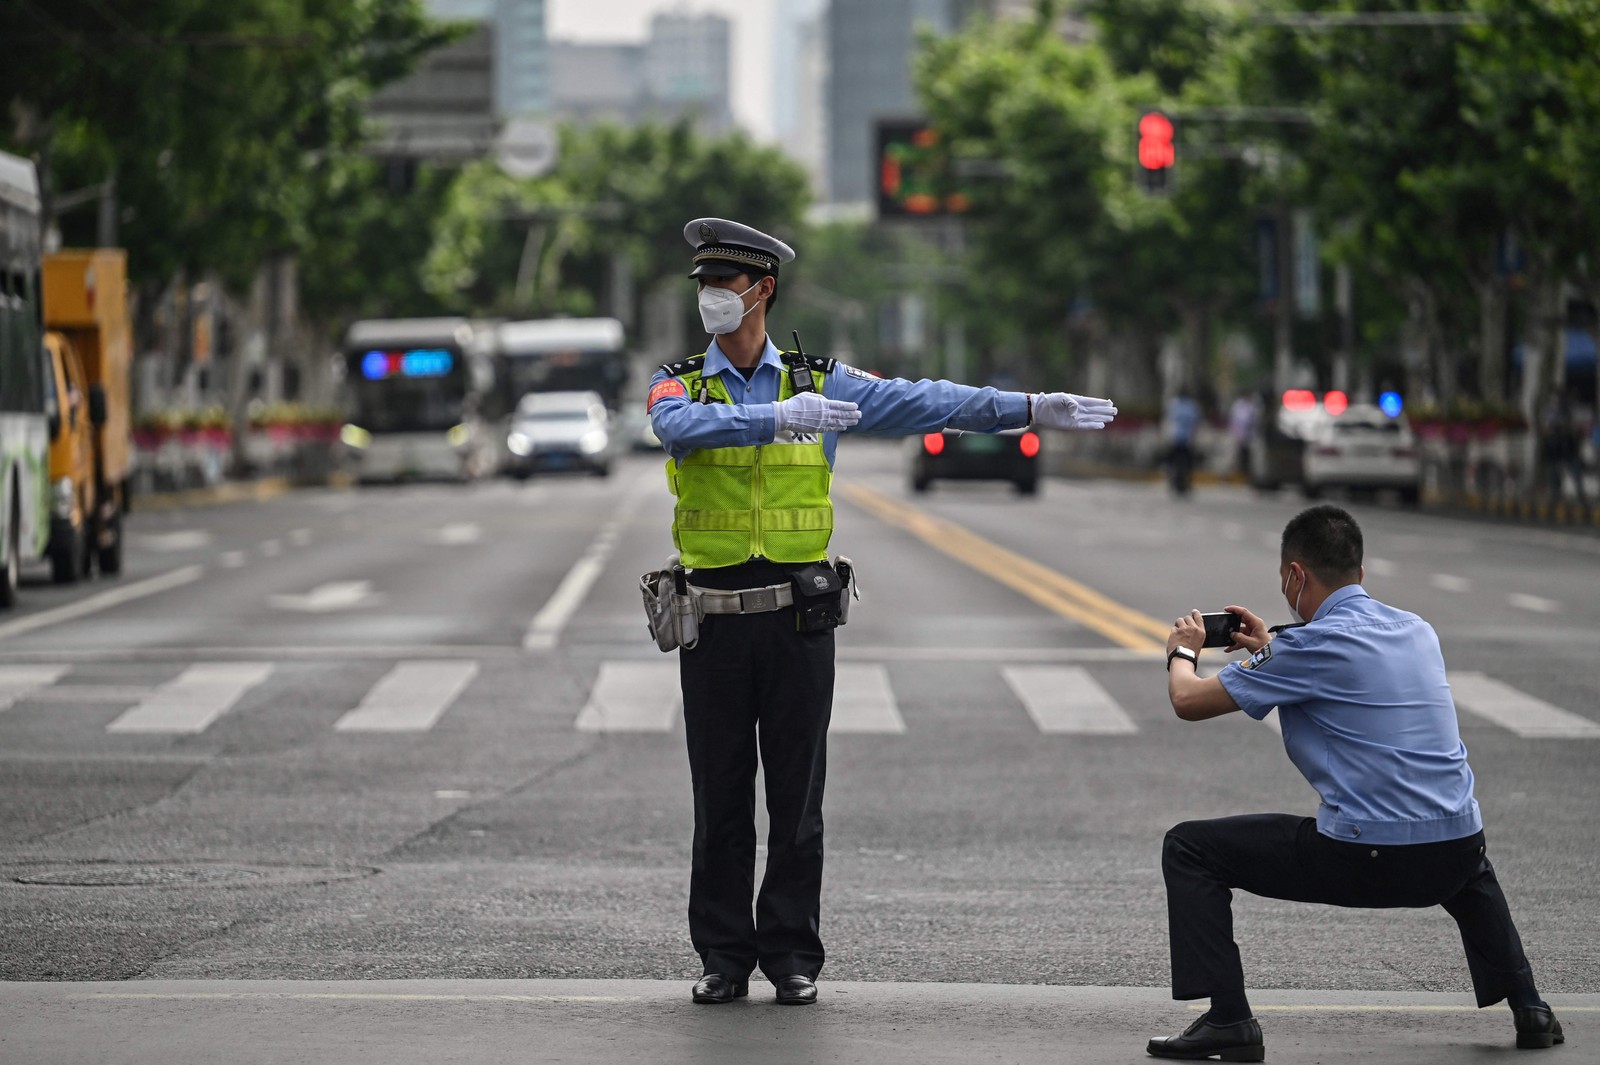 Policial fotografa colega enquanto controlava o tráfego no distrito de Jing'an, em Xangai, após o fim do lockdown que manteve a cidade dois meses com restrições pesadas — Foto: HECTOR RETAMAL / AFP